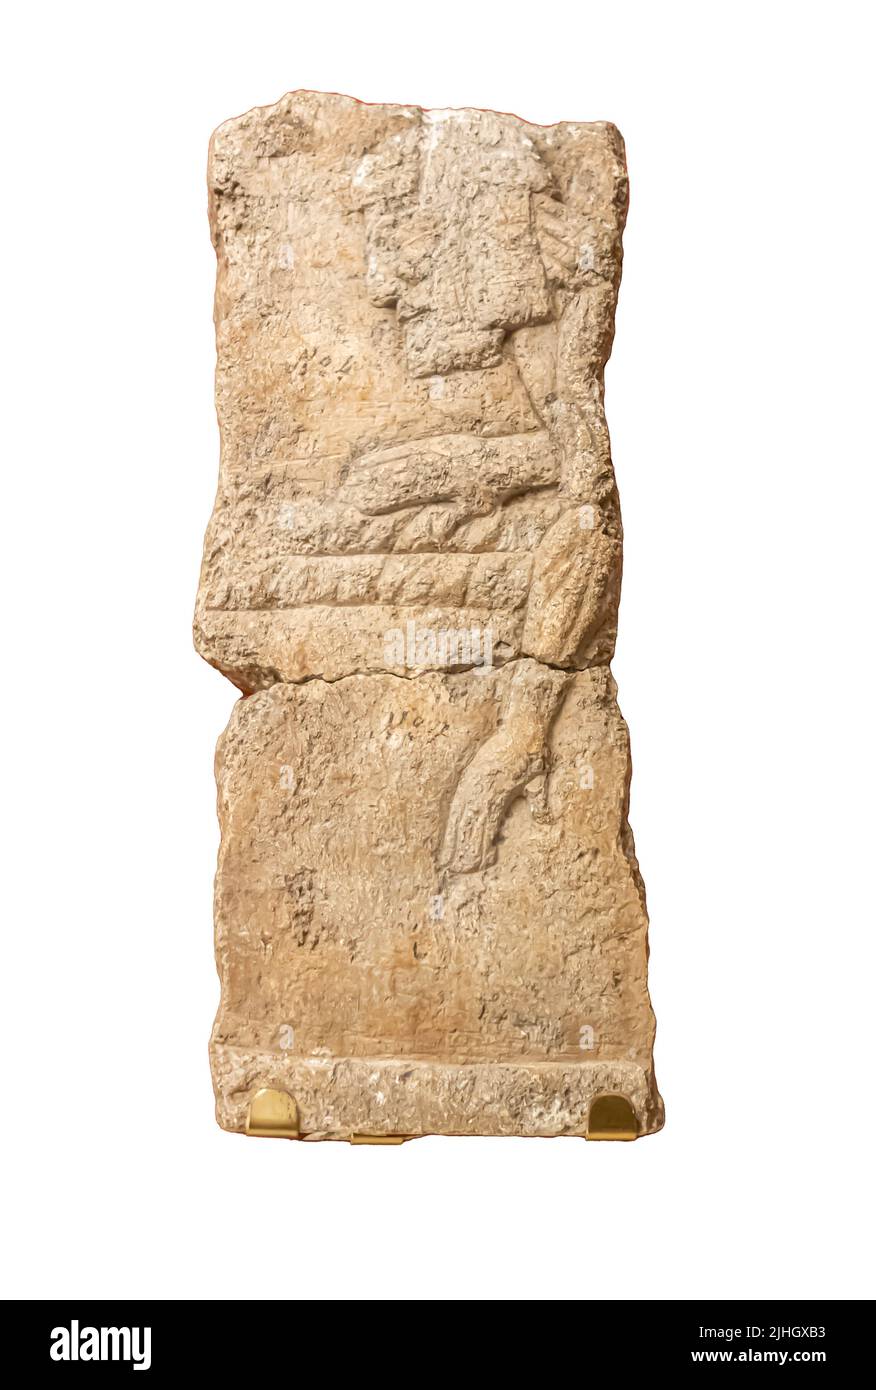 Ein Mann, der ein Gewicht schleppt. Detail aus der Skulptur im Palast von Sanherib in Ninive, Kuyunjik. Kalkstein. Anfang des 7.. Jahrhunderts v. Chr. Stockfoto